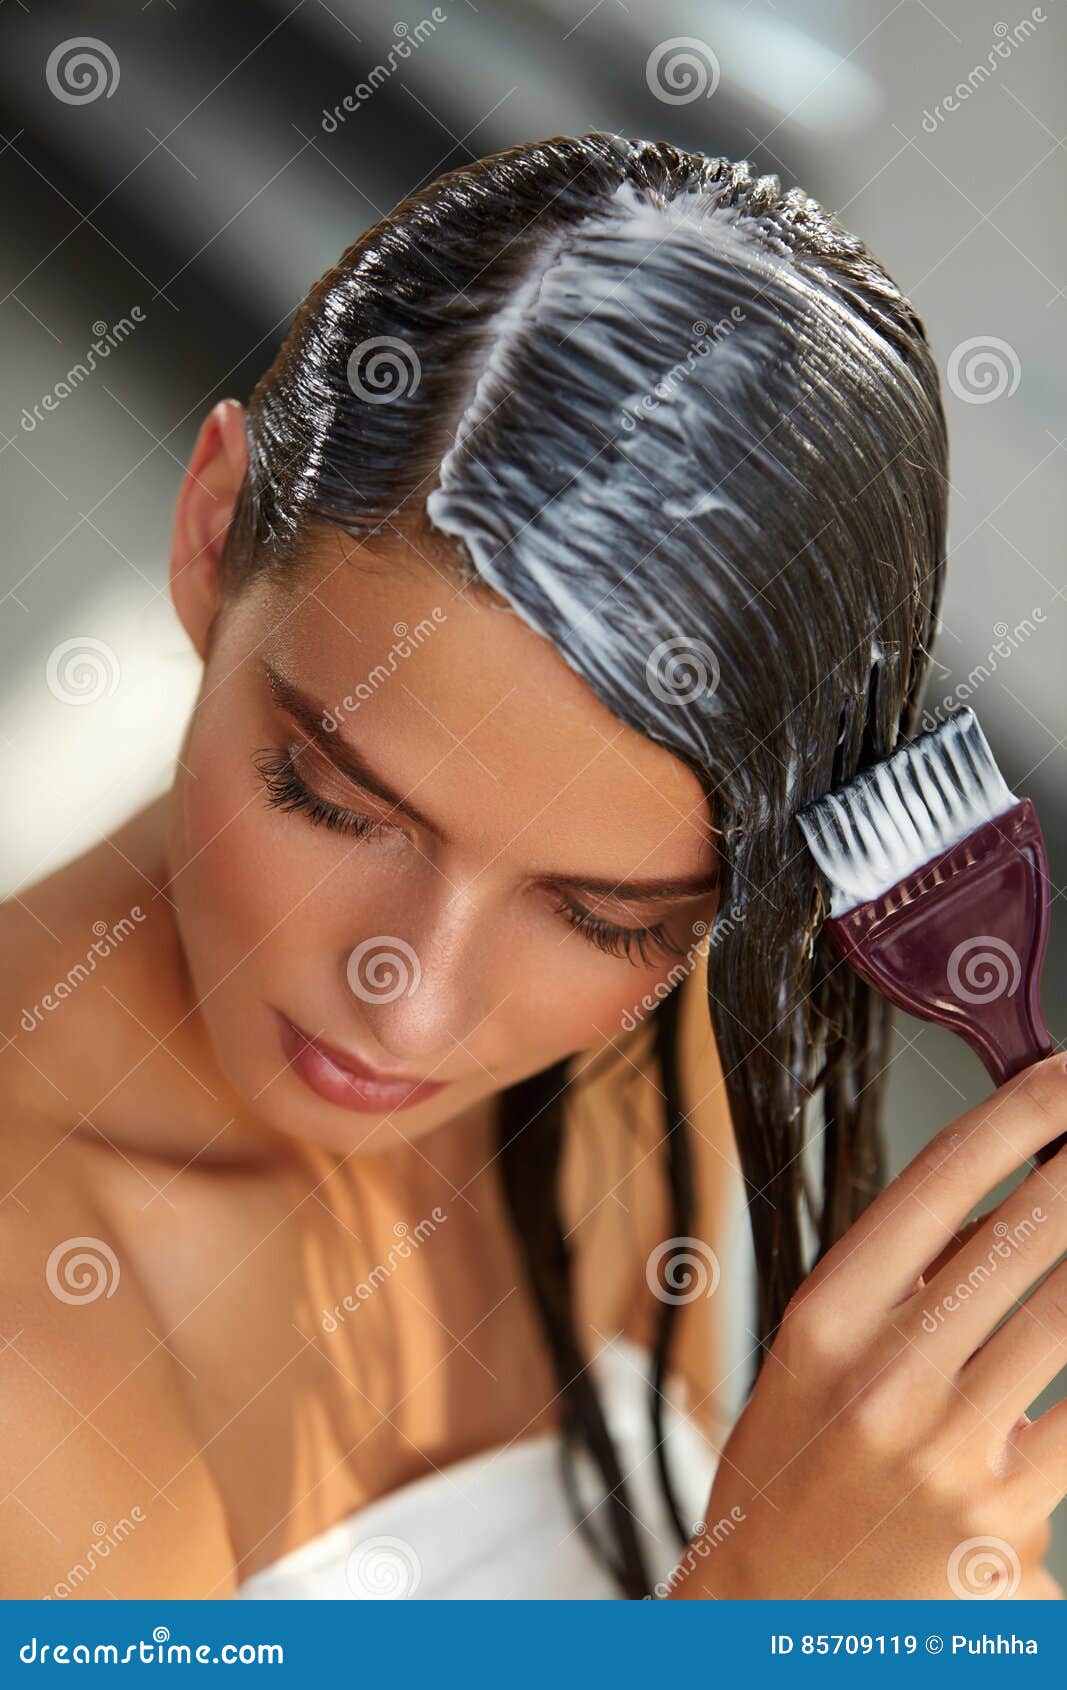 Маска на влажные волосы. Маска для волос девушка. Девушка наносит маску на волосы. Нанесение маски на волосы. Масочка с мокрыми волосами.